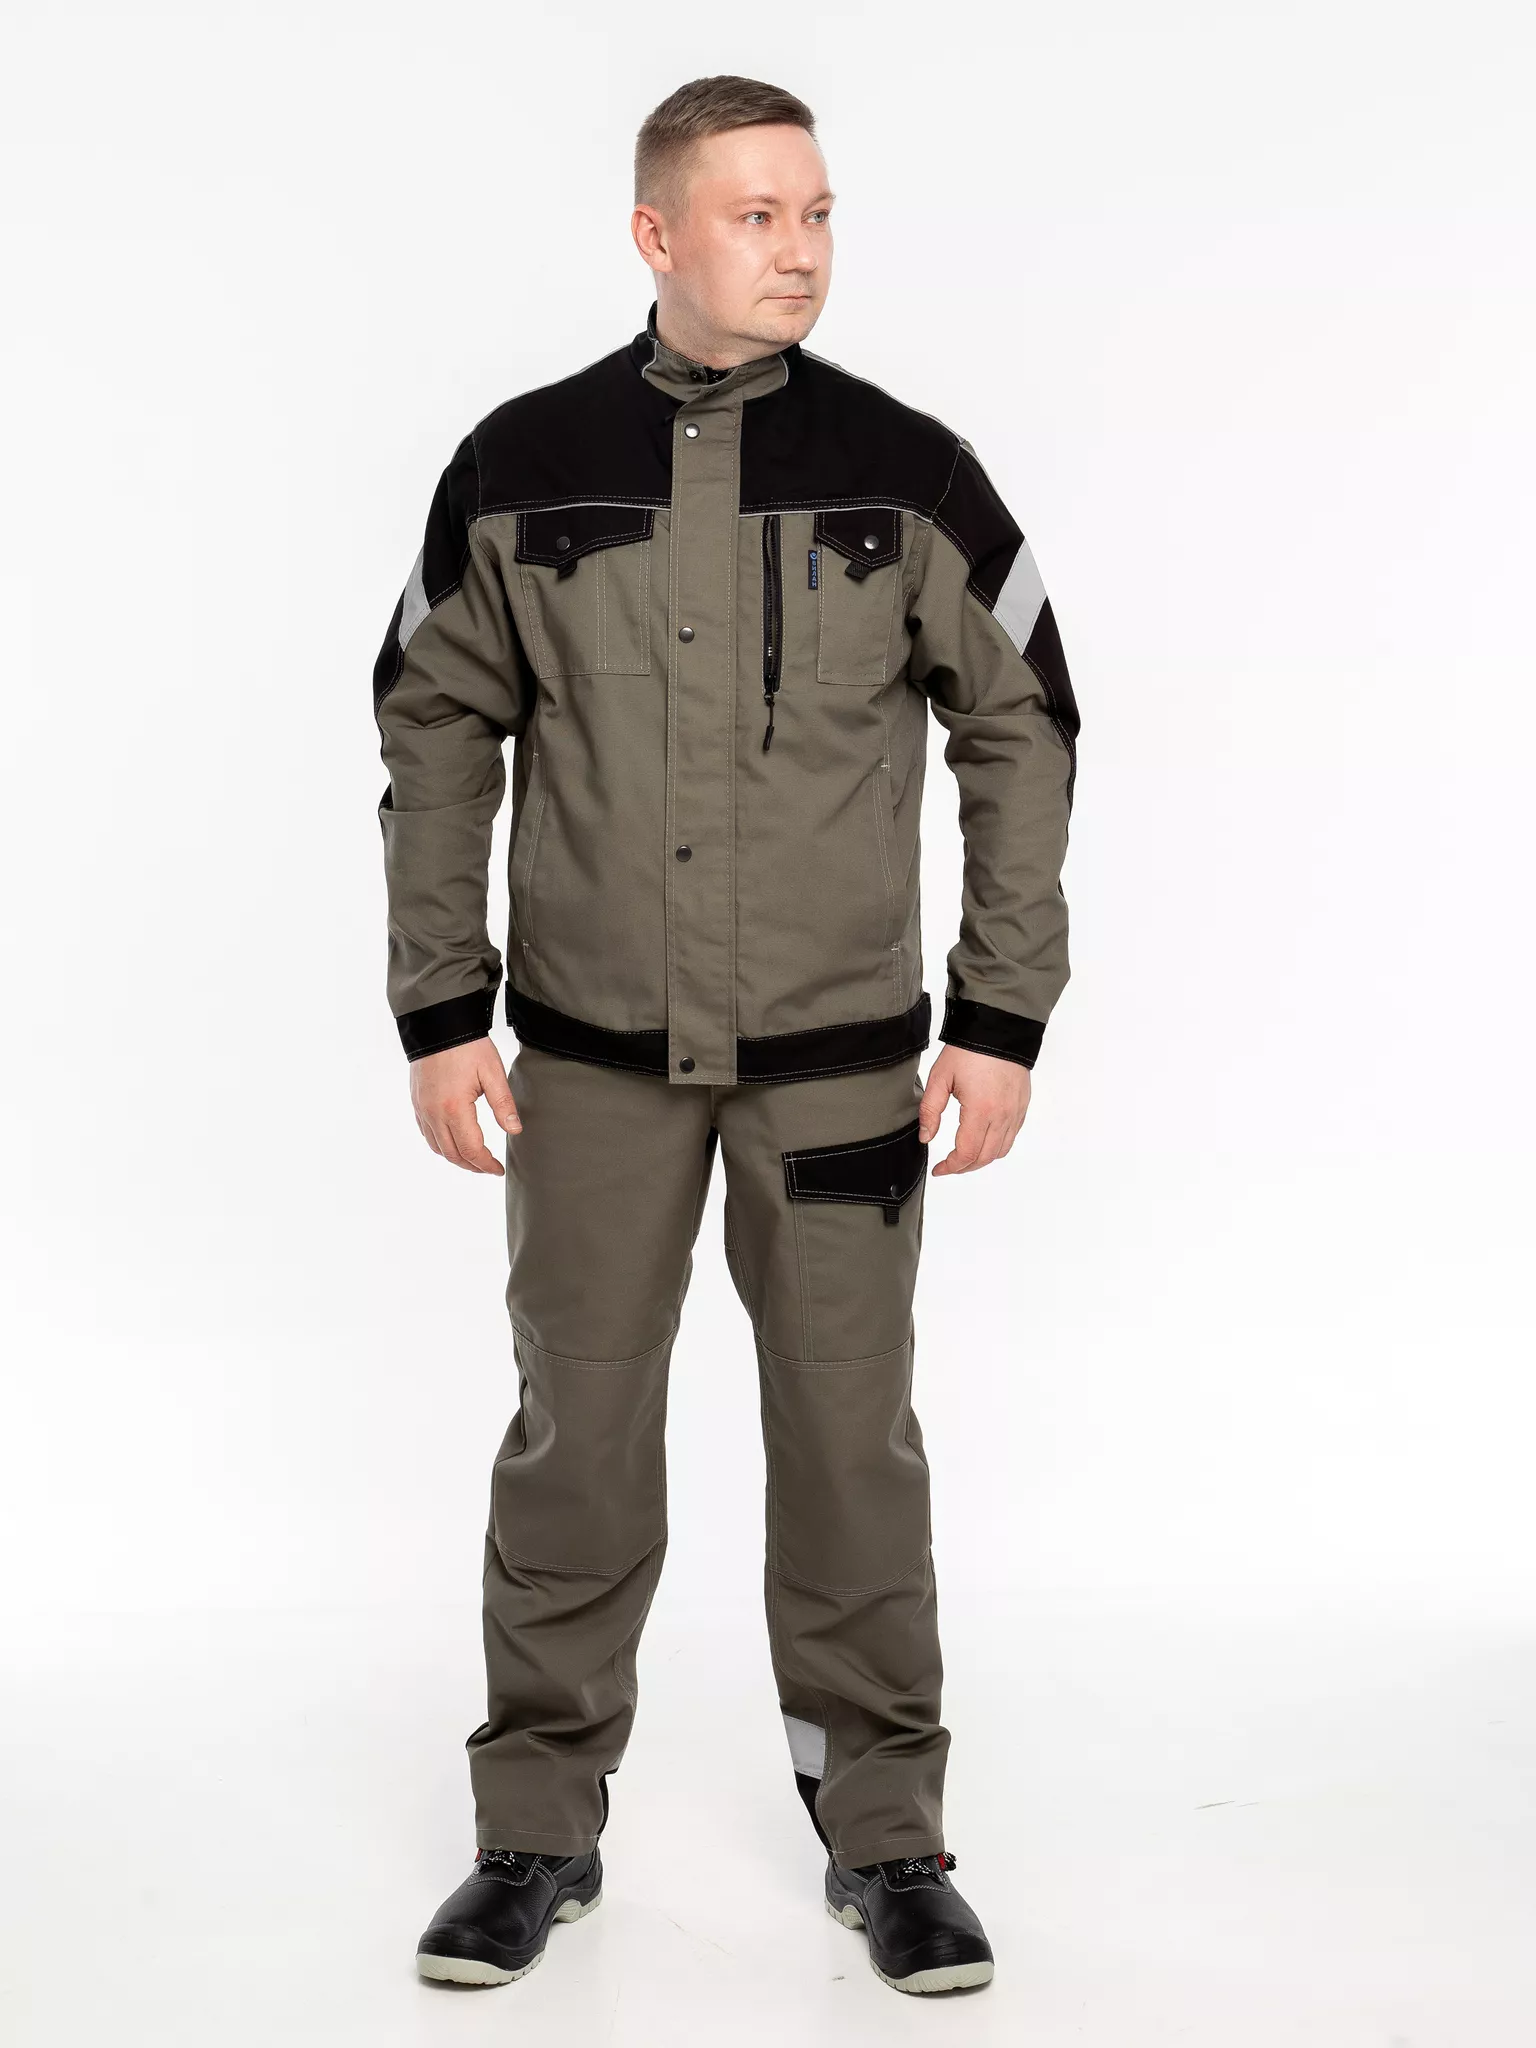 Куртка рабочая КР.366 р.52-54, рост 170-176 (цвет оливковый, отделка черная.СОП)